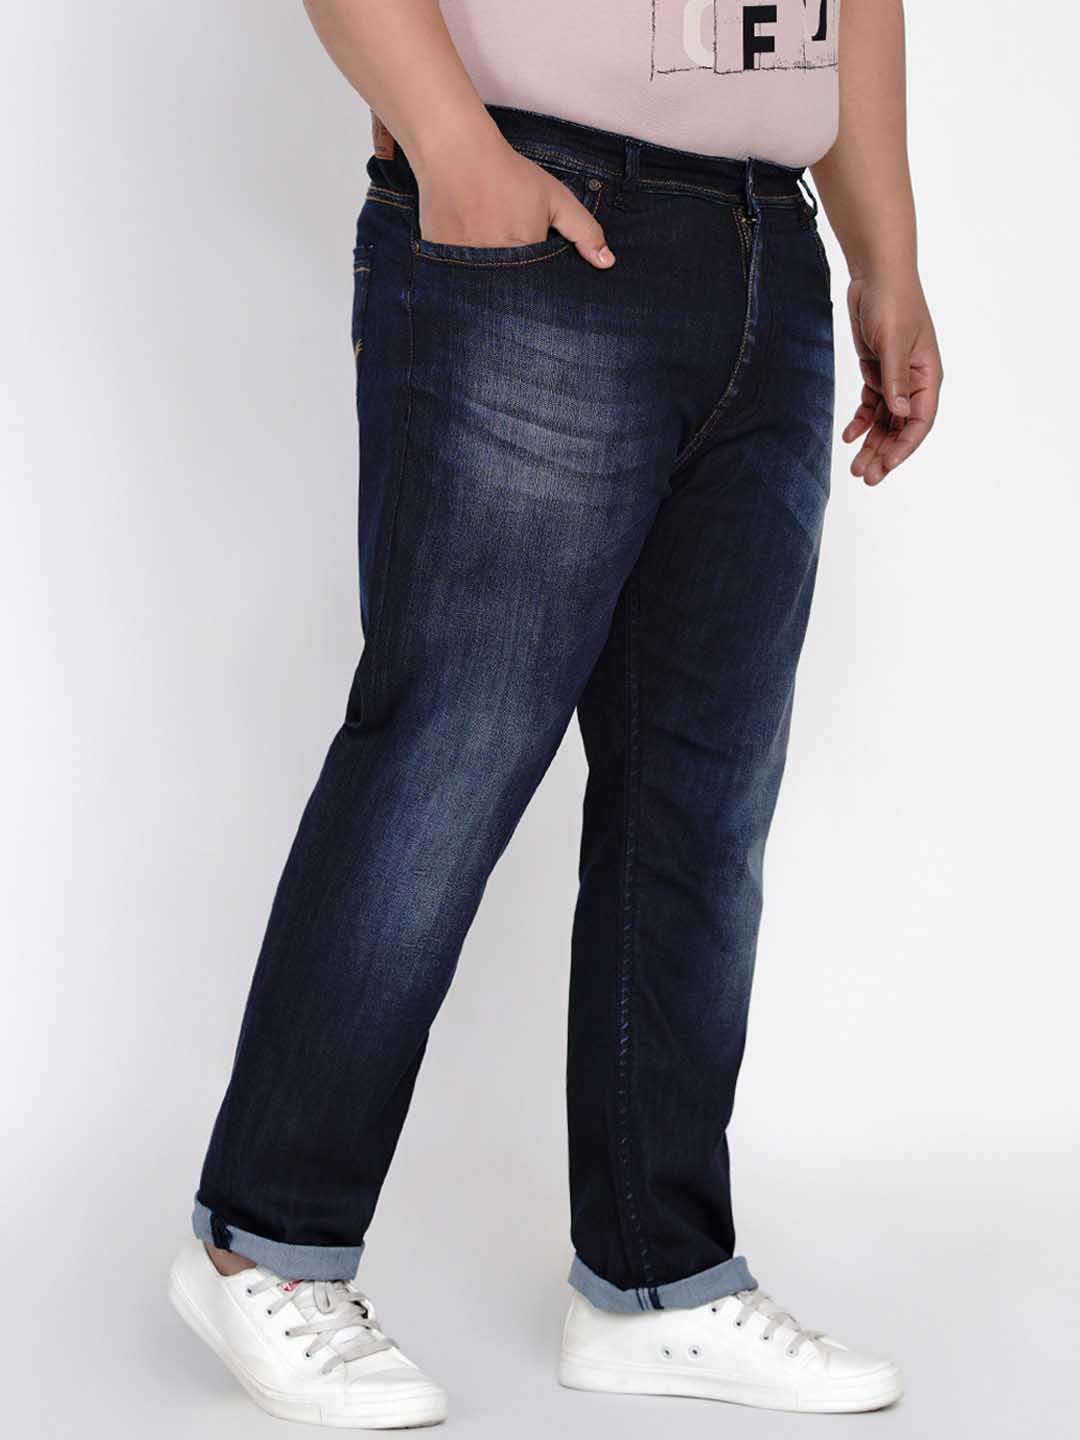 affordables/jeans/JPJ2556/jpj2556-5.jpg